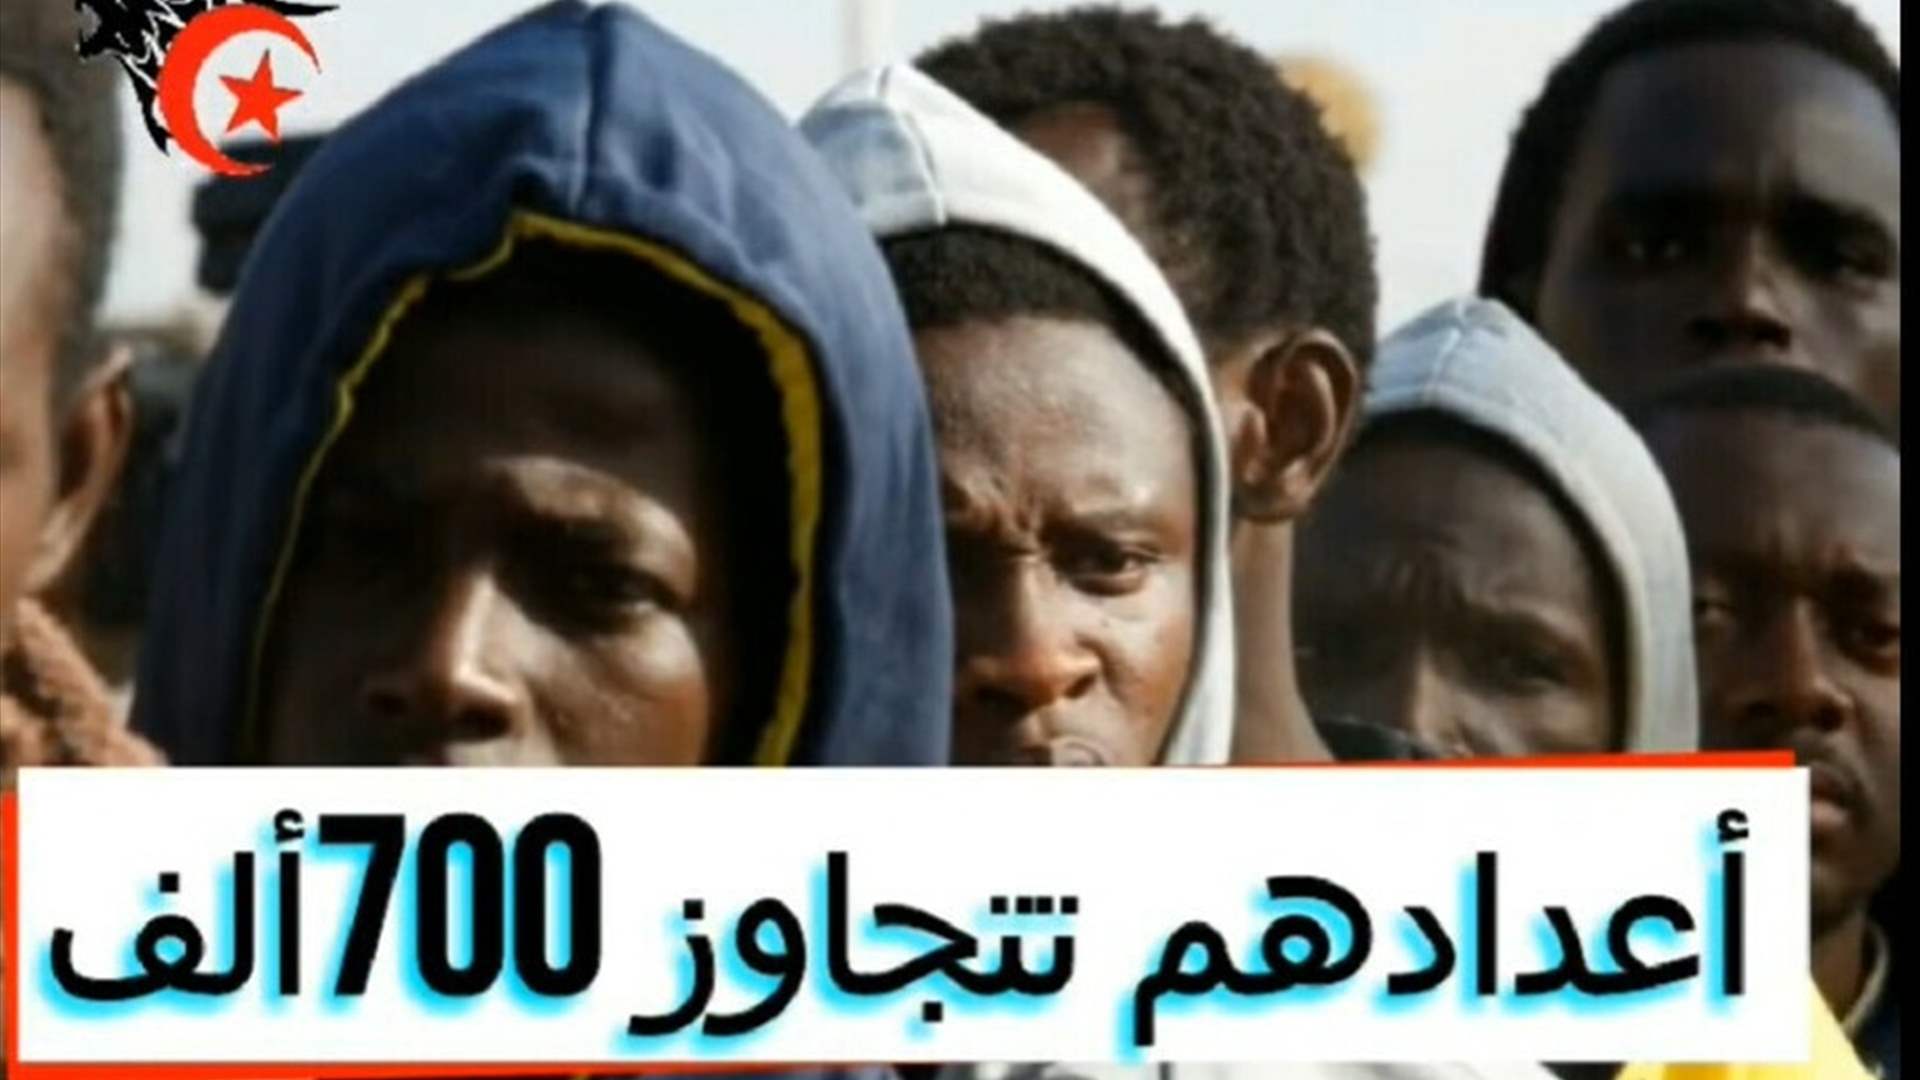 ادّعاءات مضللة بشأن عدد المهاجرين من أفريقيا الى تونس